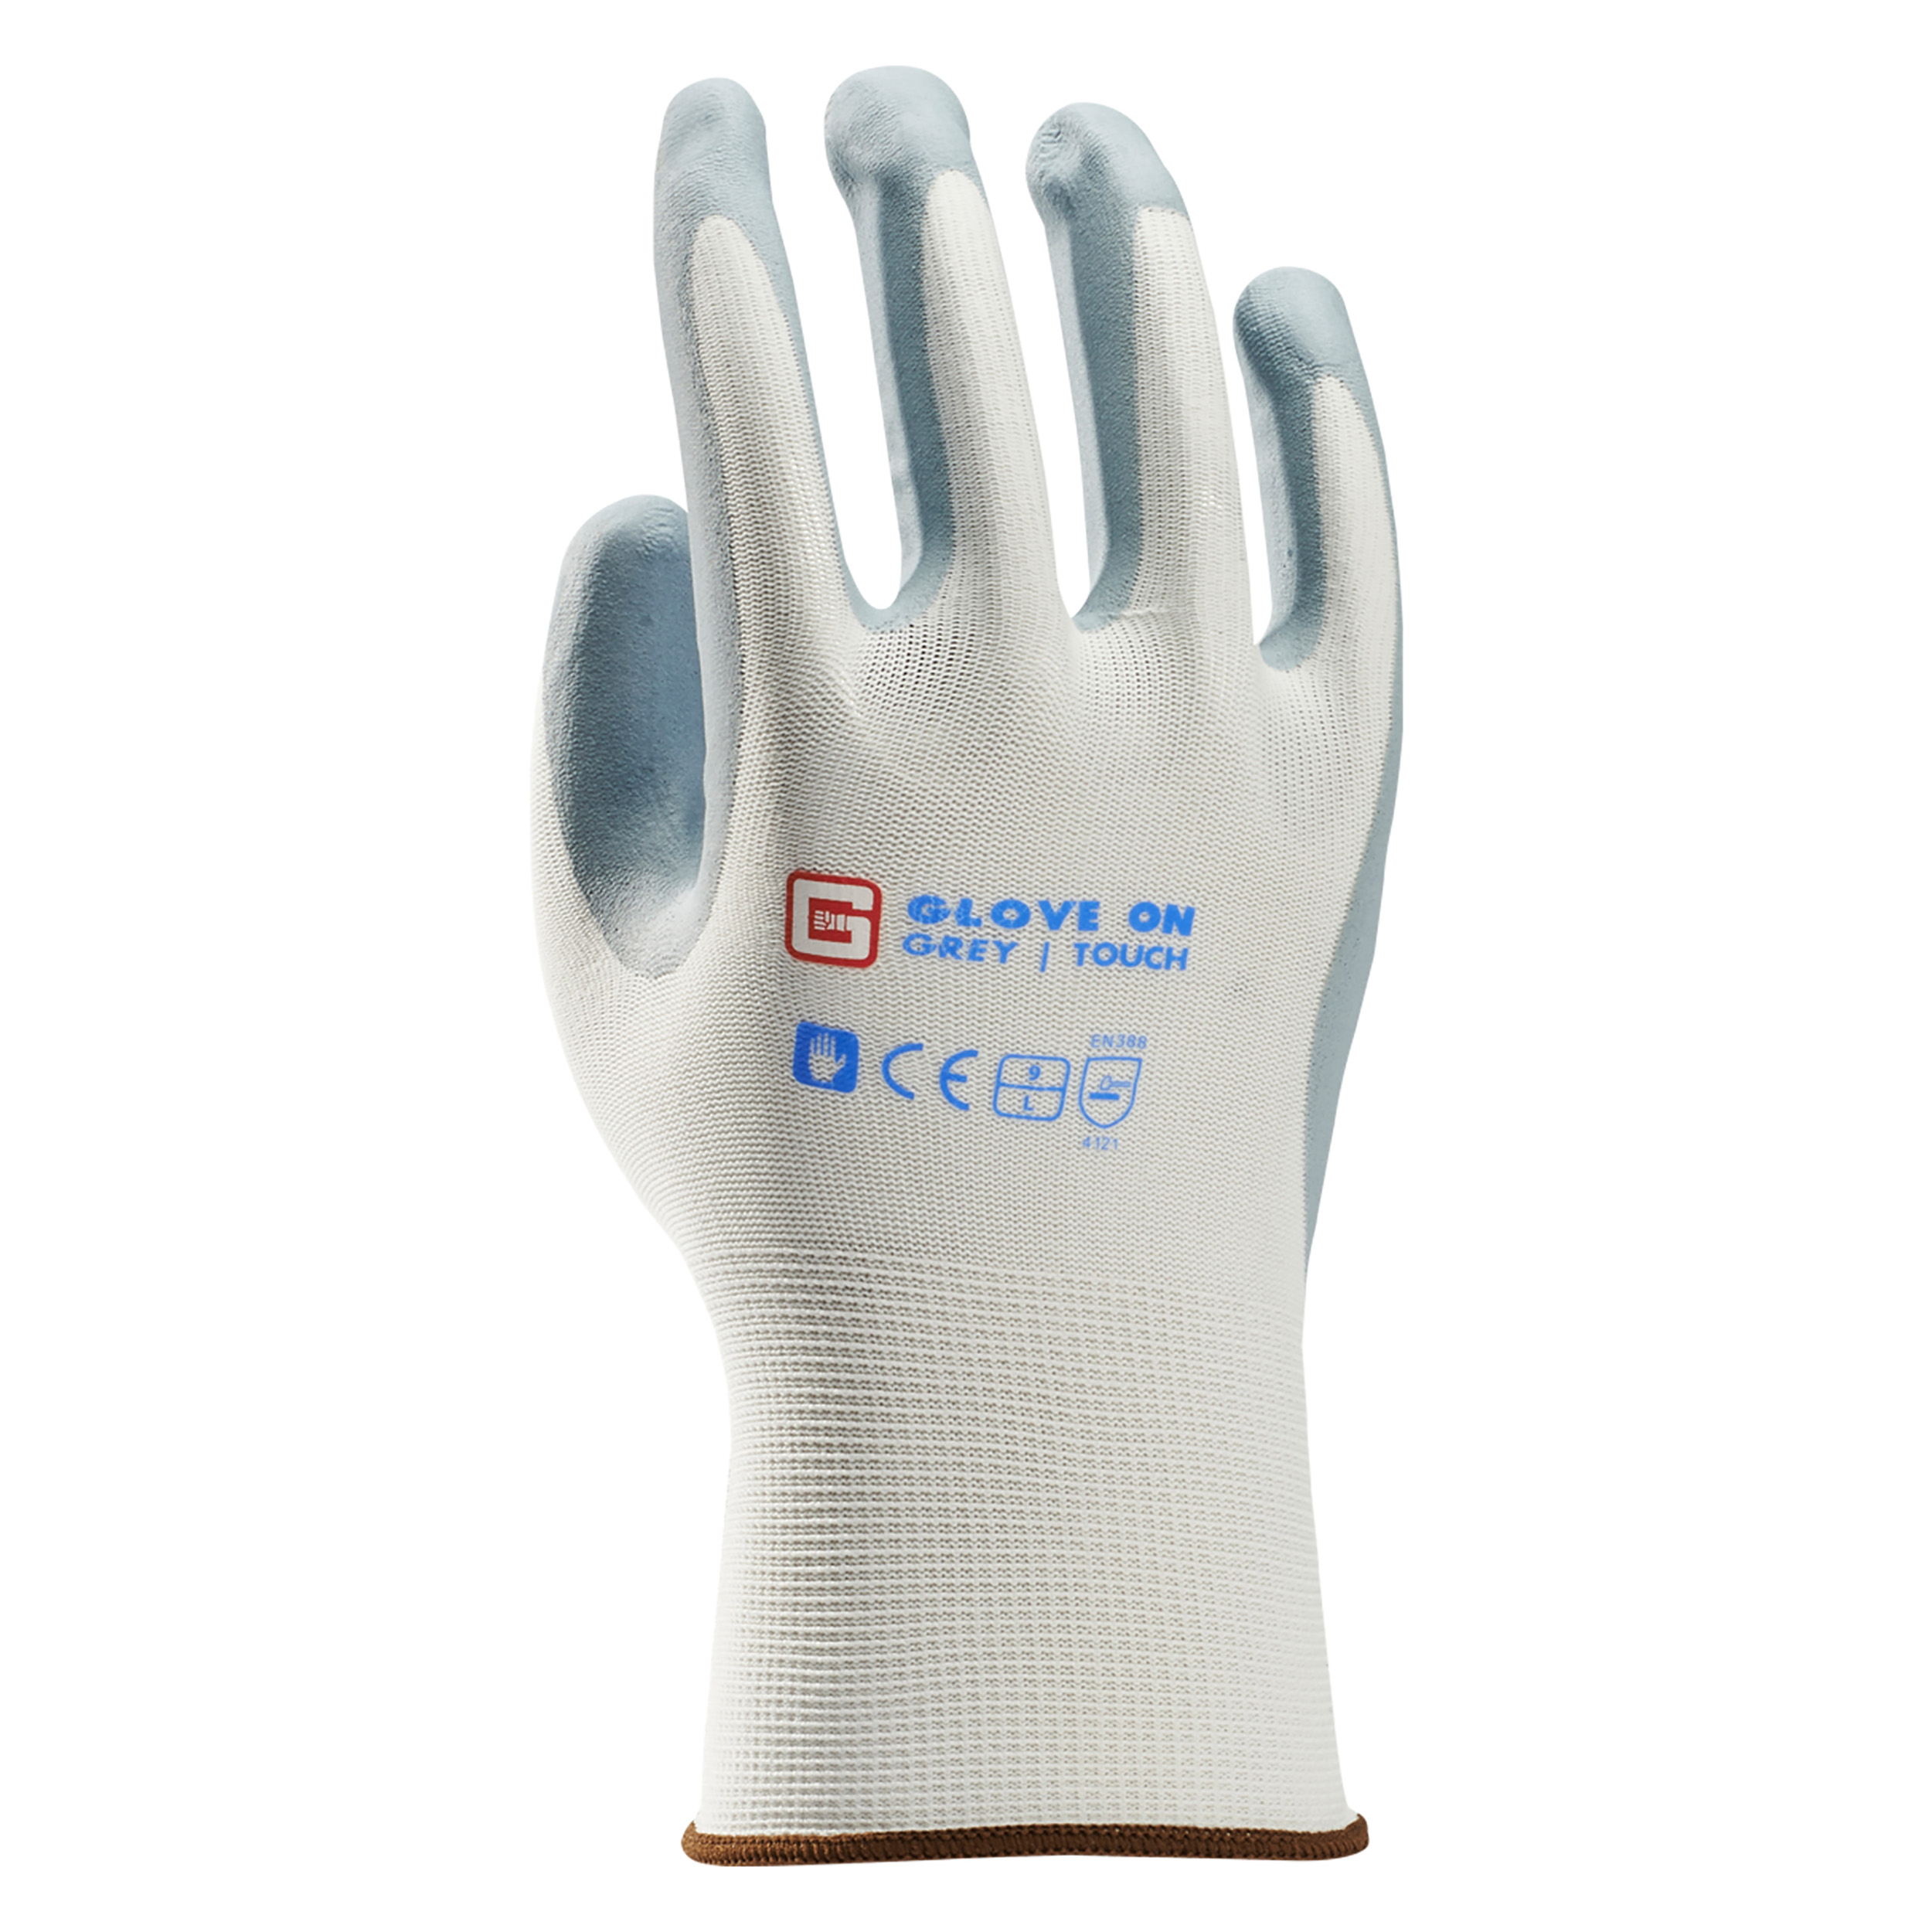 21.080.29 Glove On Touch werkhandschoen touch grey - L